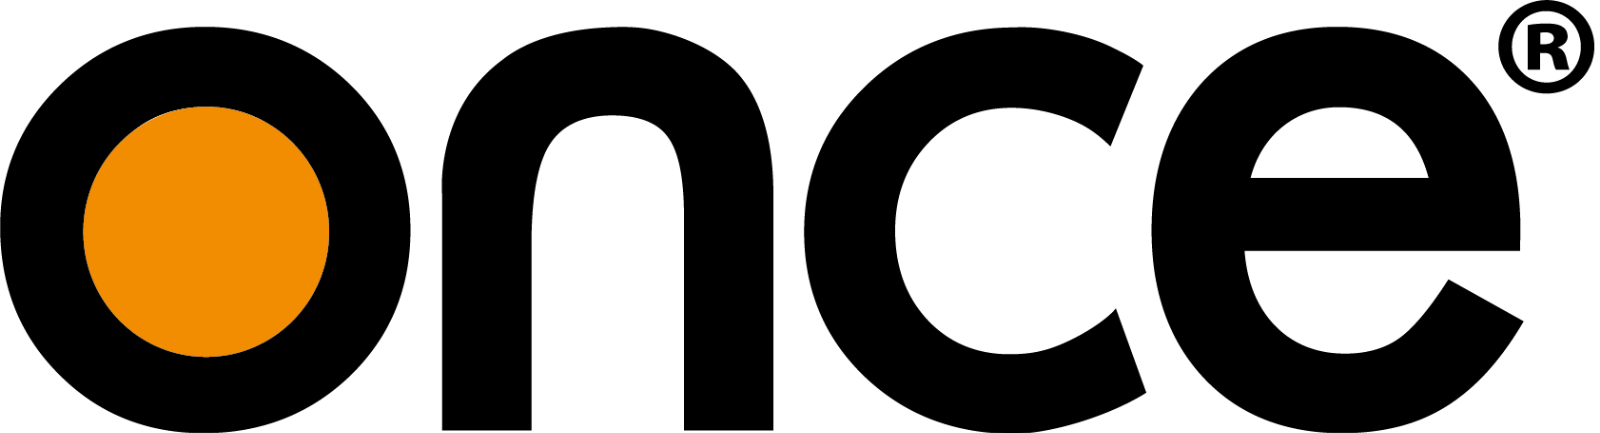 Once animal lighting logo